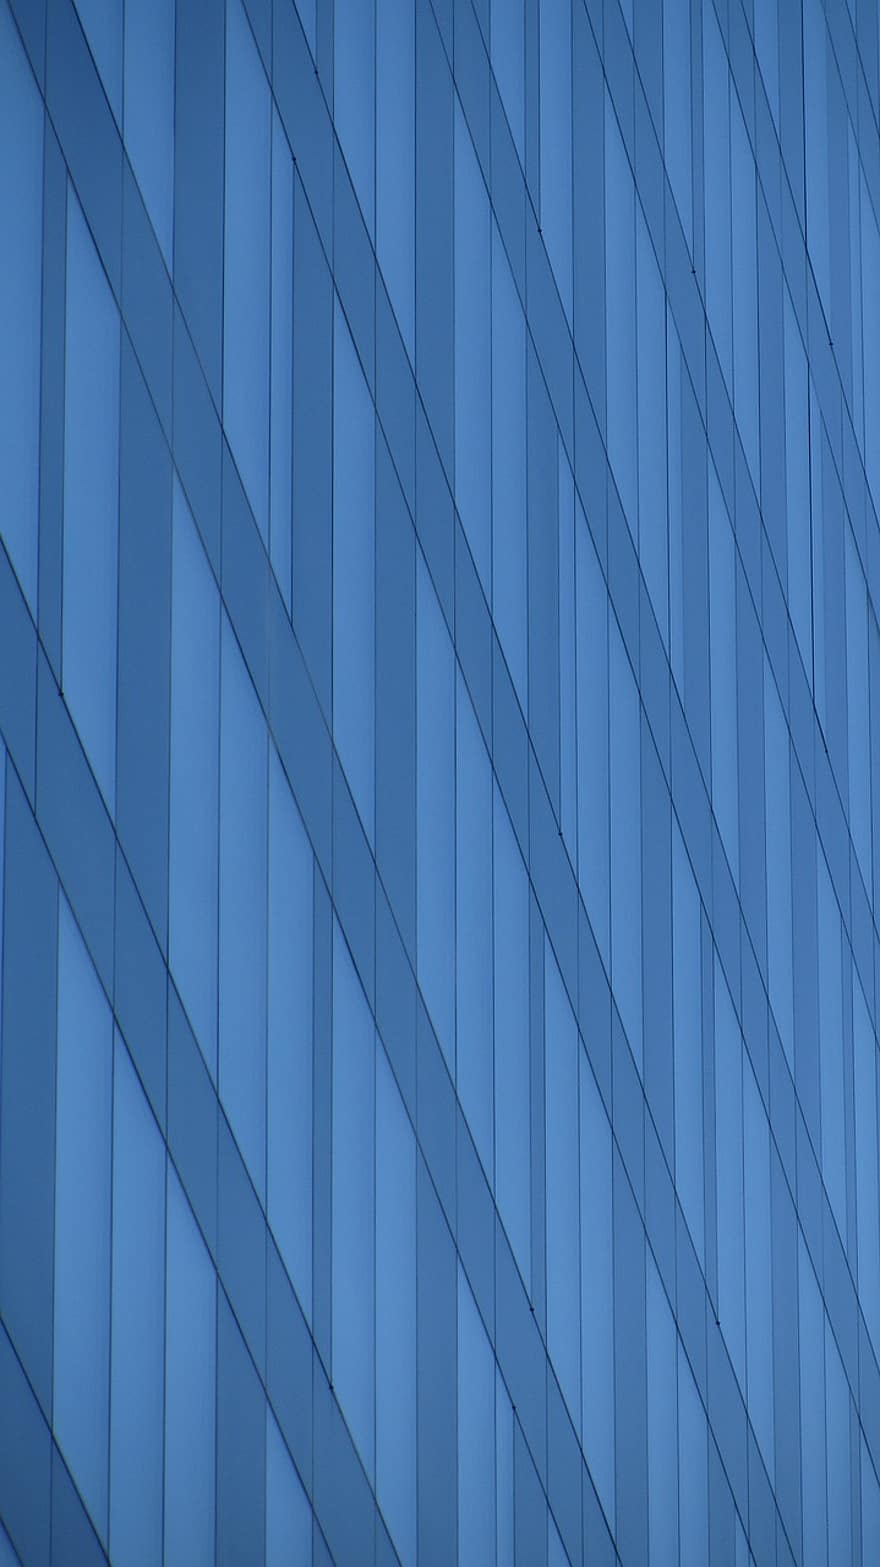 مبنى إداري ، نافذة او شباك ، عصري ، مائل ، خطوط ، نمط ، نبذة مختصرة ، الخلفيات ، هندسة معمارية ، التصميم ، أزرق